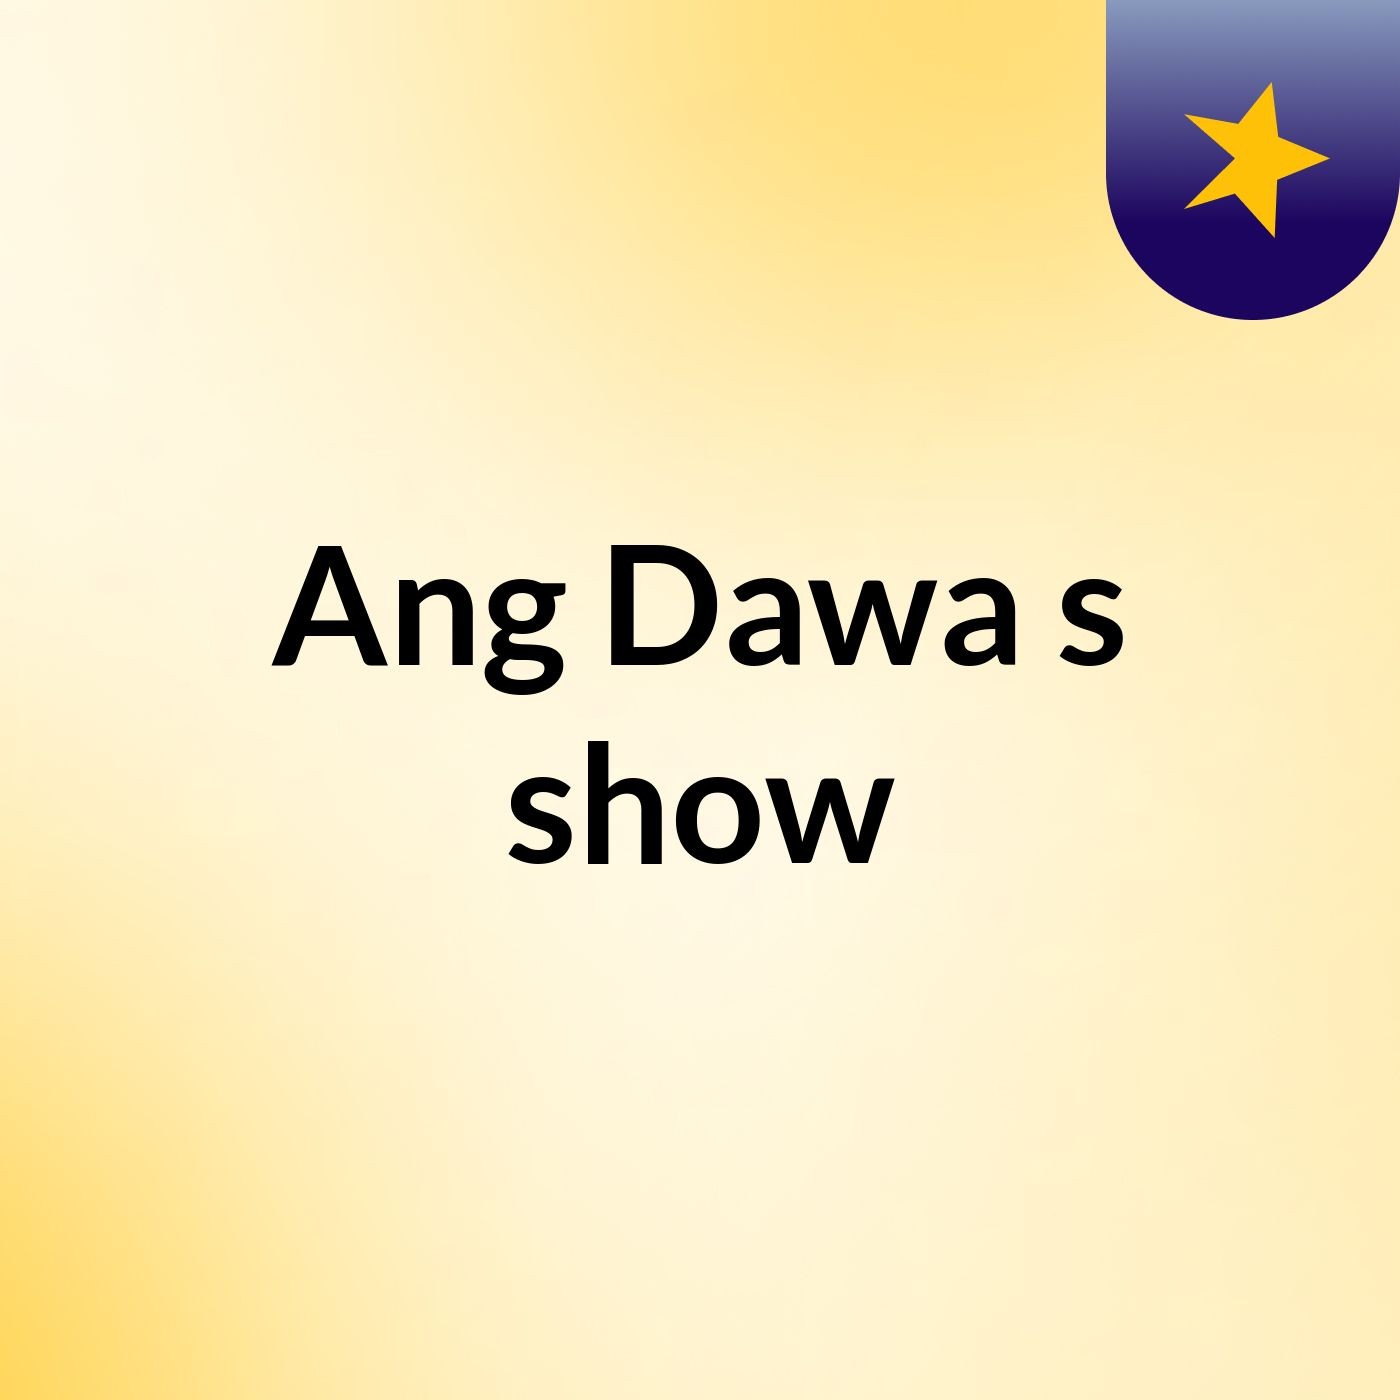 Ang Dawa's show